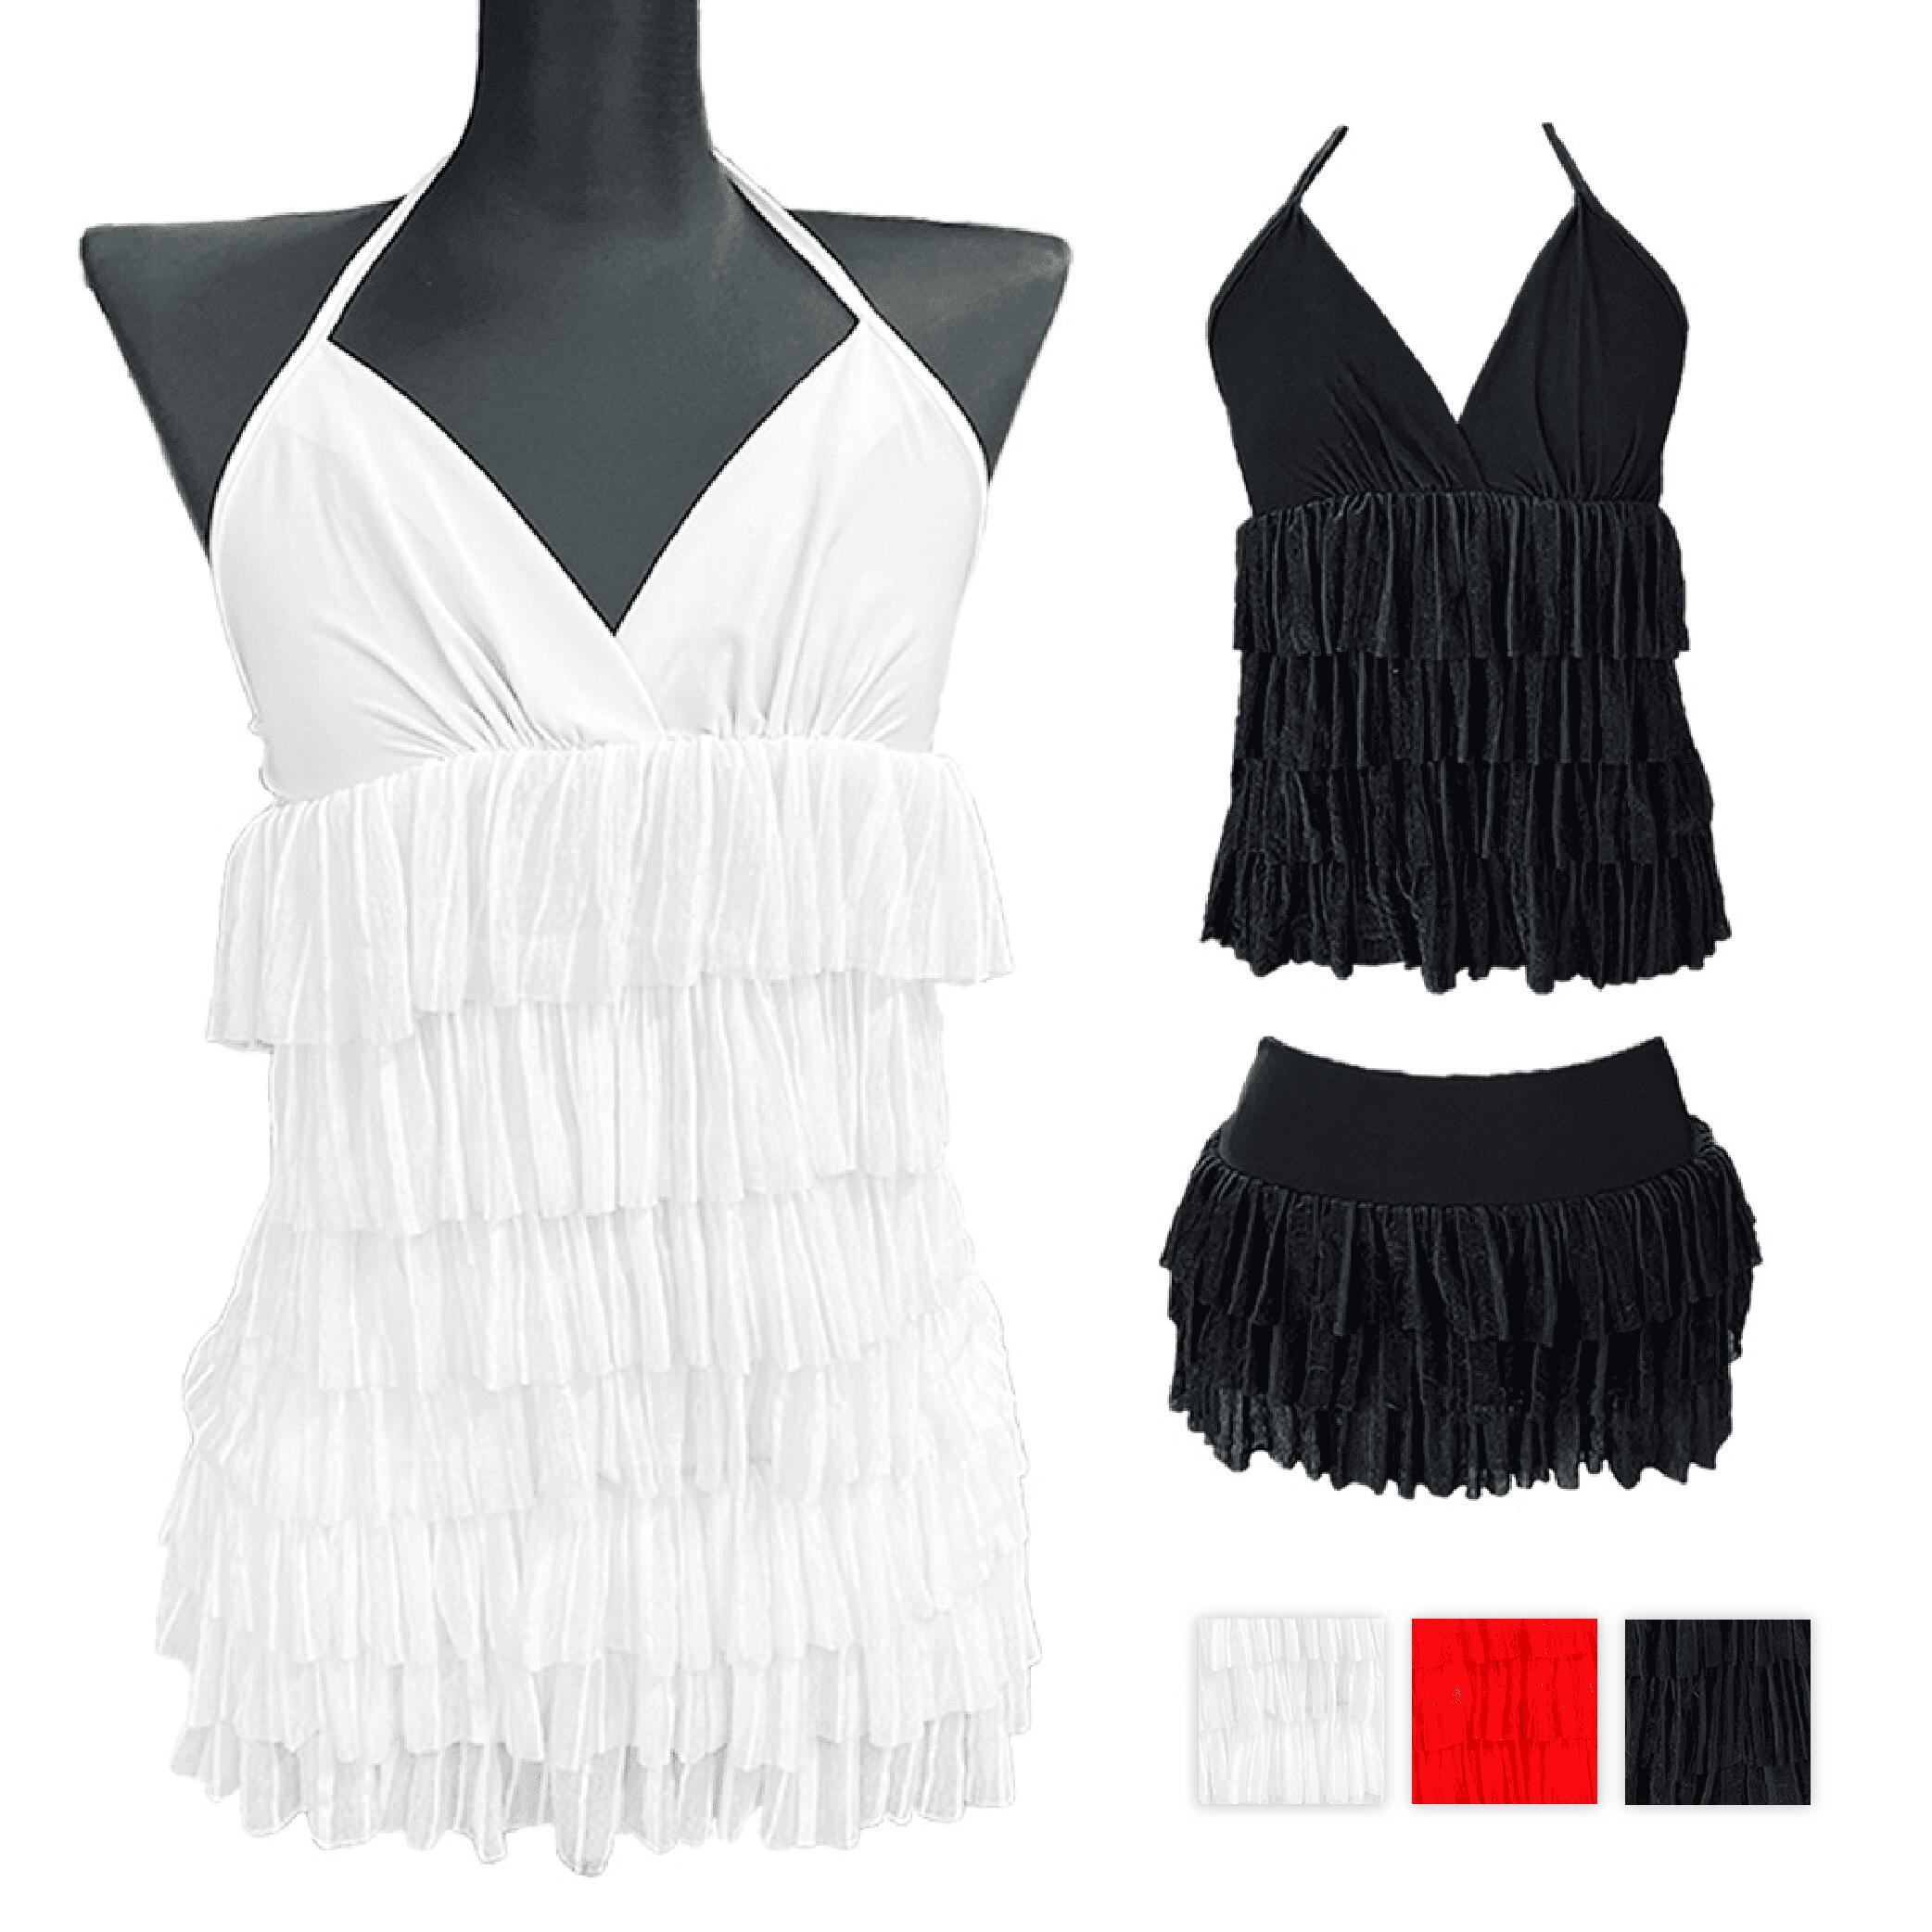 ダンス 衣装 ホルタートップス ミニスカート 2点セット セットアップ レッド ホワイト ブラック Mサイズ 1000円